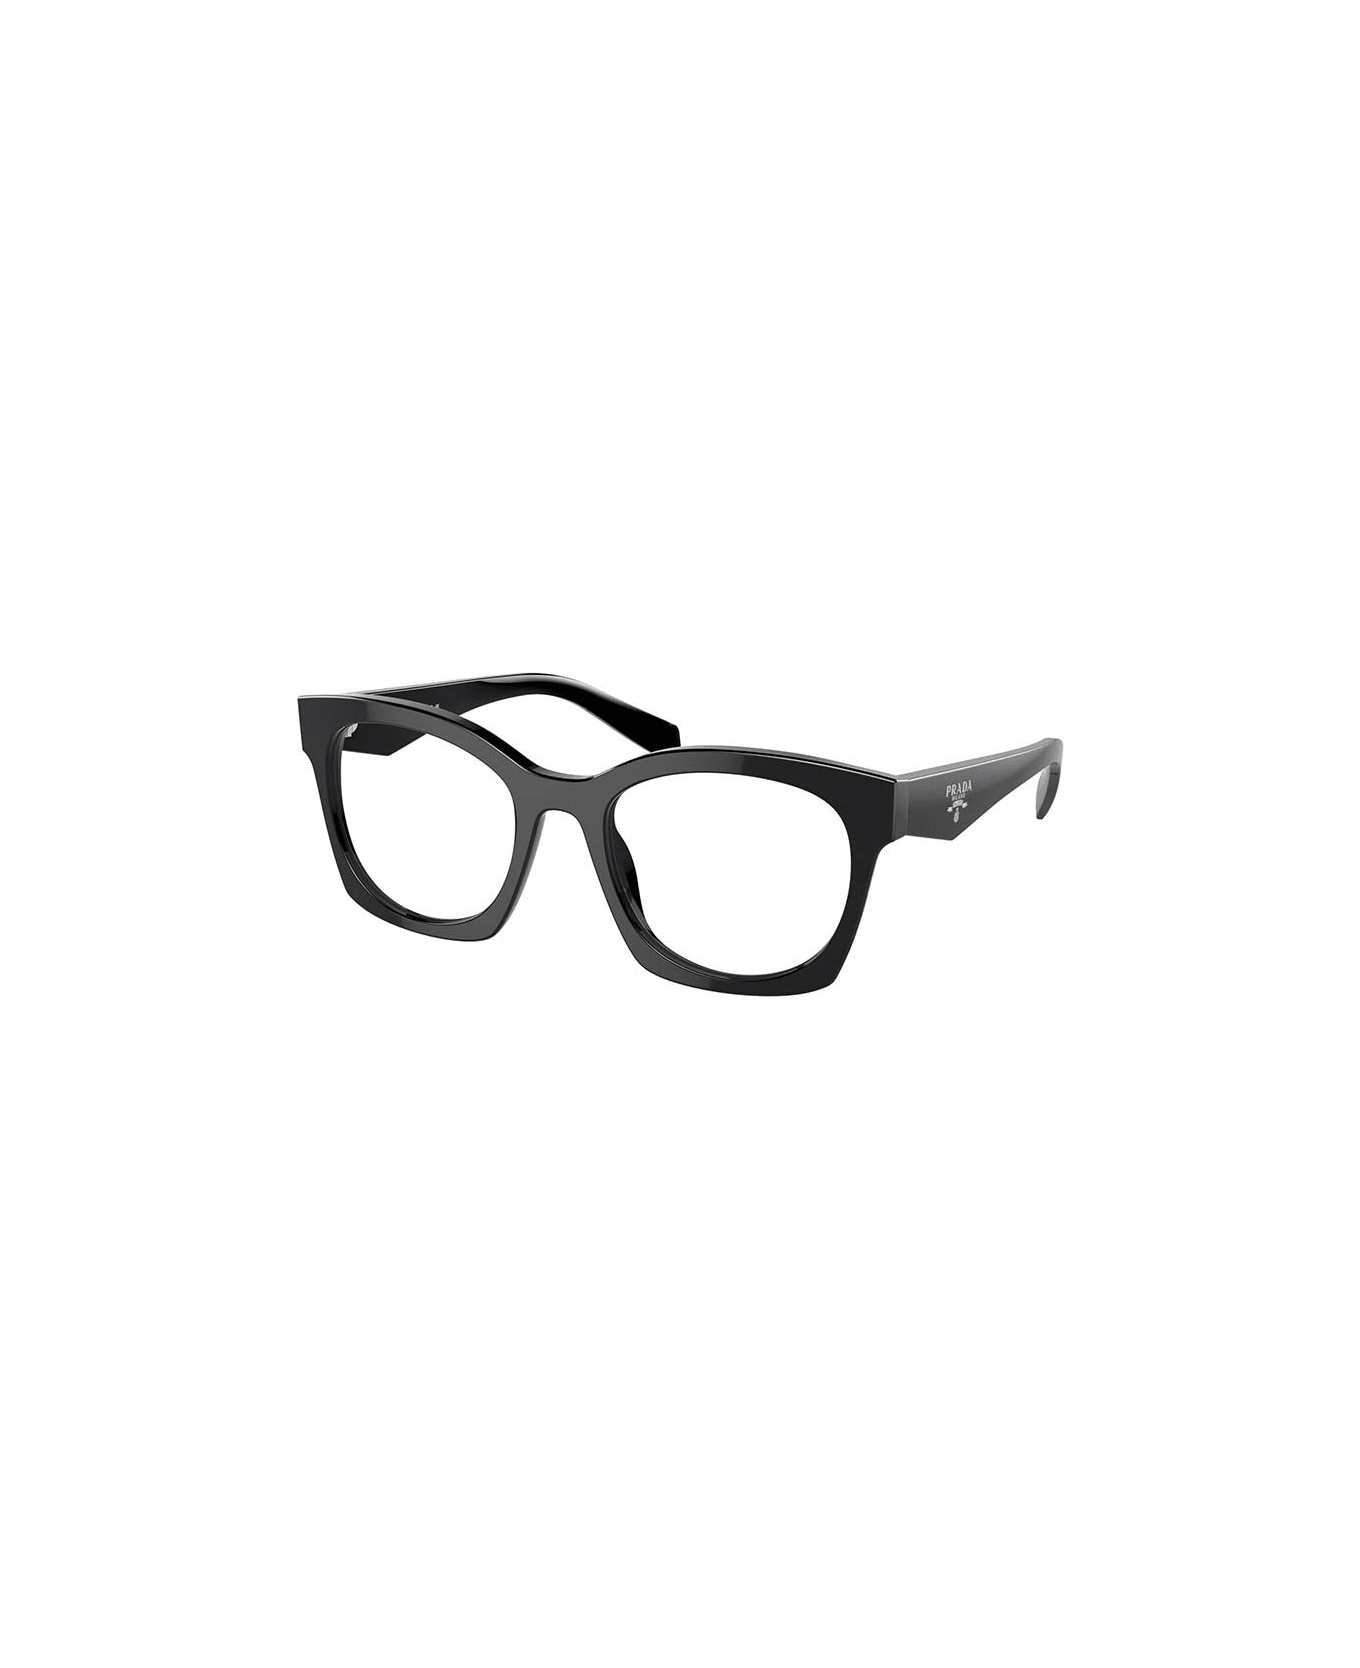 Prada Eyewear Glasses - 16K1O1 アイウェア